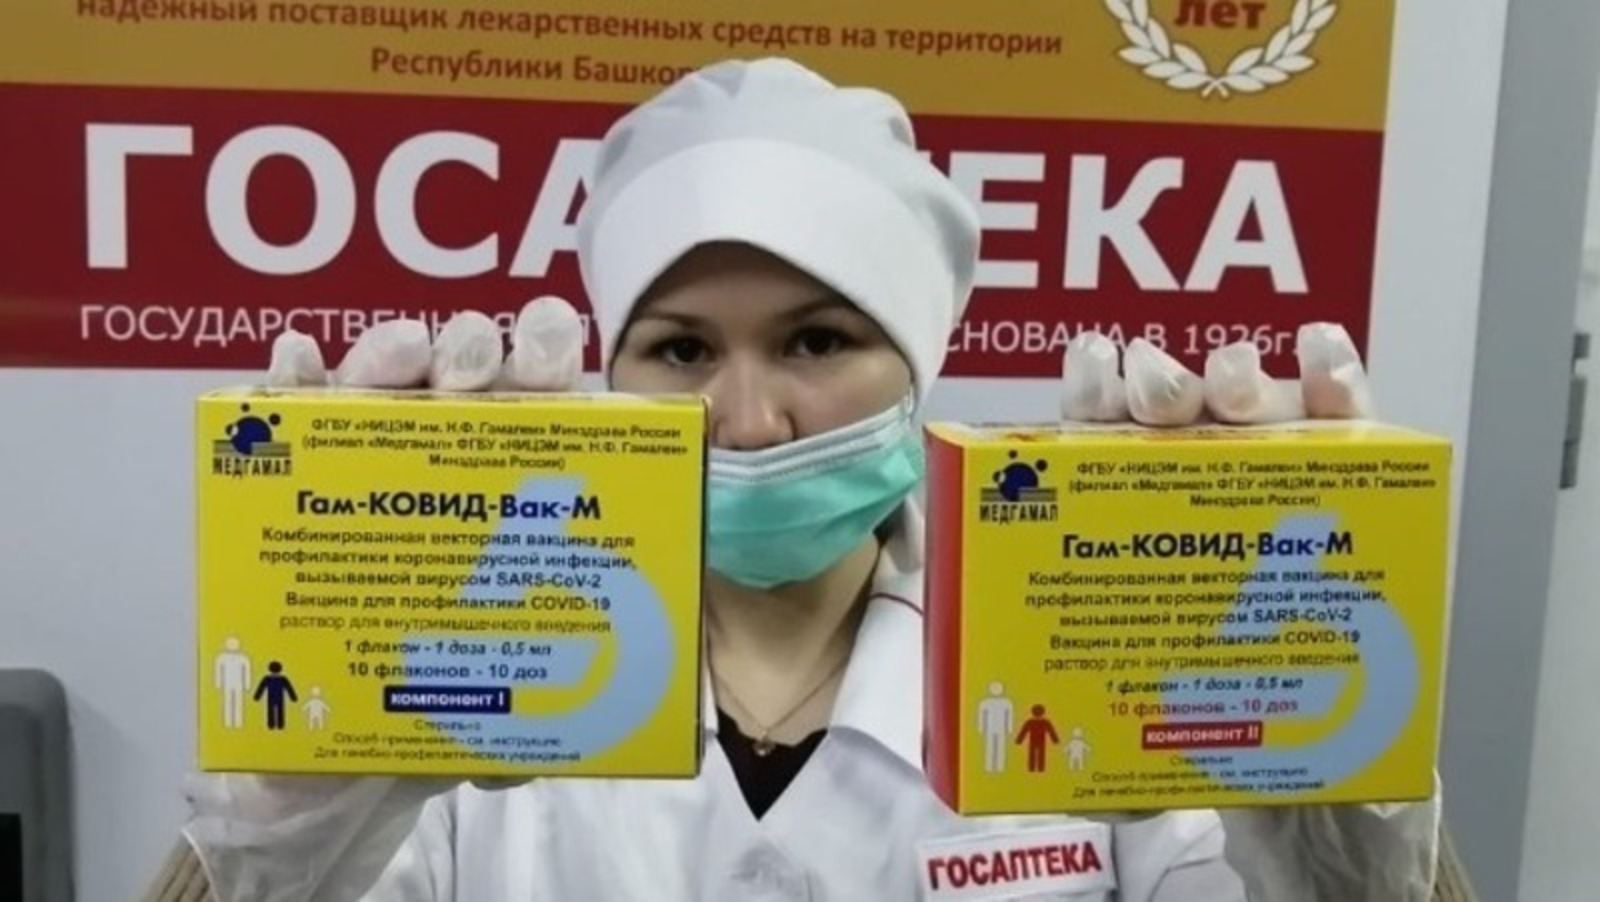 Башҡортостанда үҫмерҙәр өсөн «Спутник М» вакцинаһы бөткән: республикаға яңы партияһы ҡасан килер?